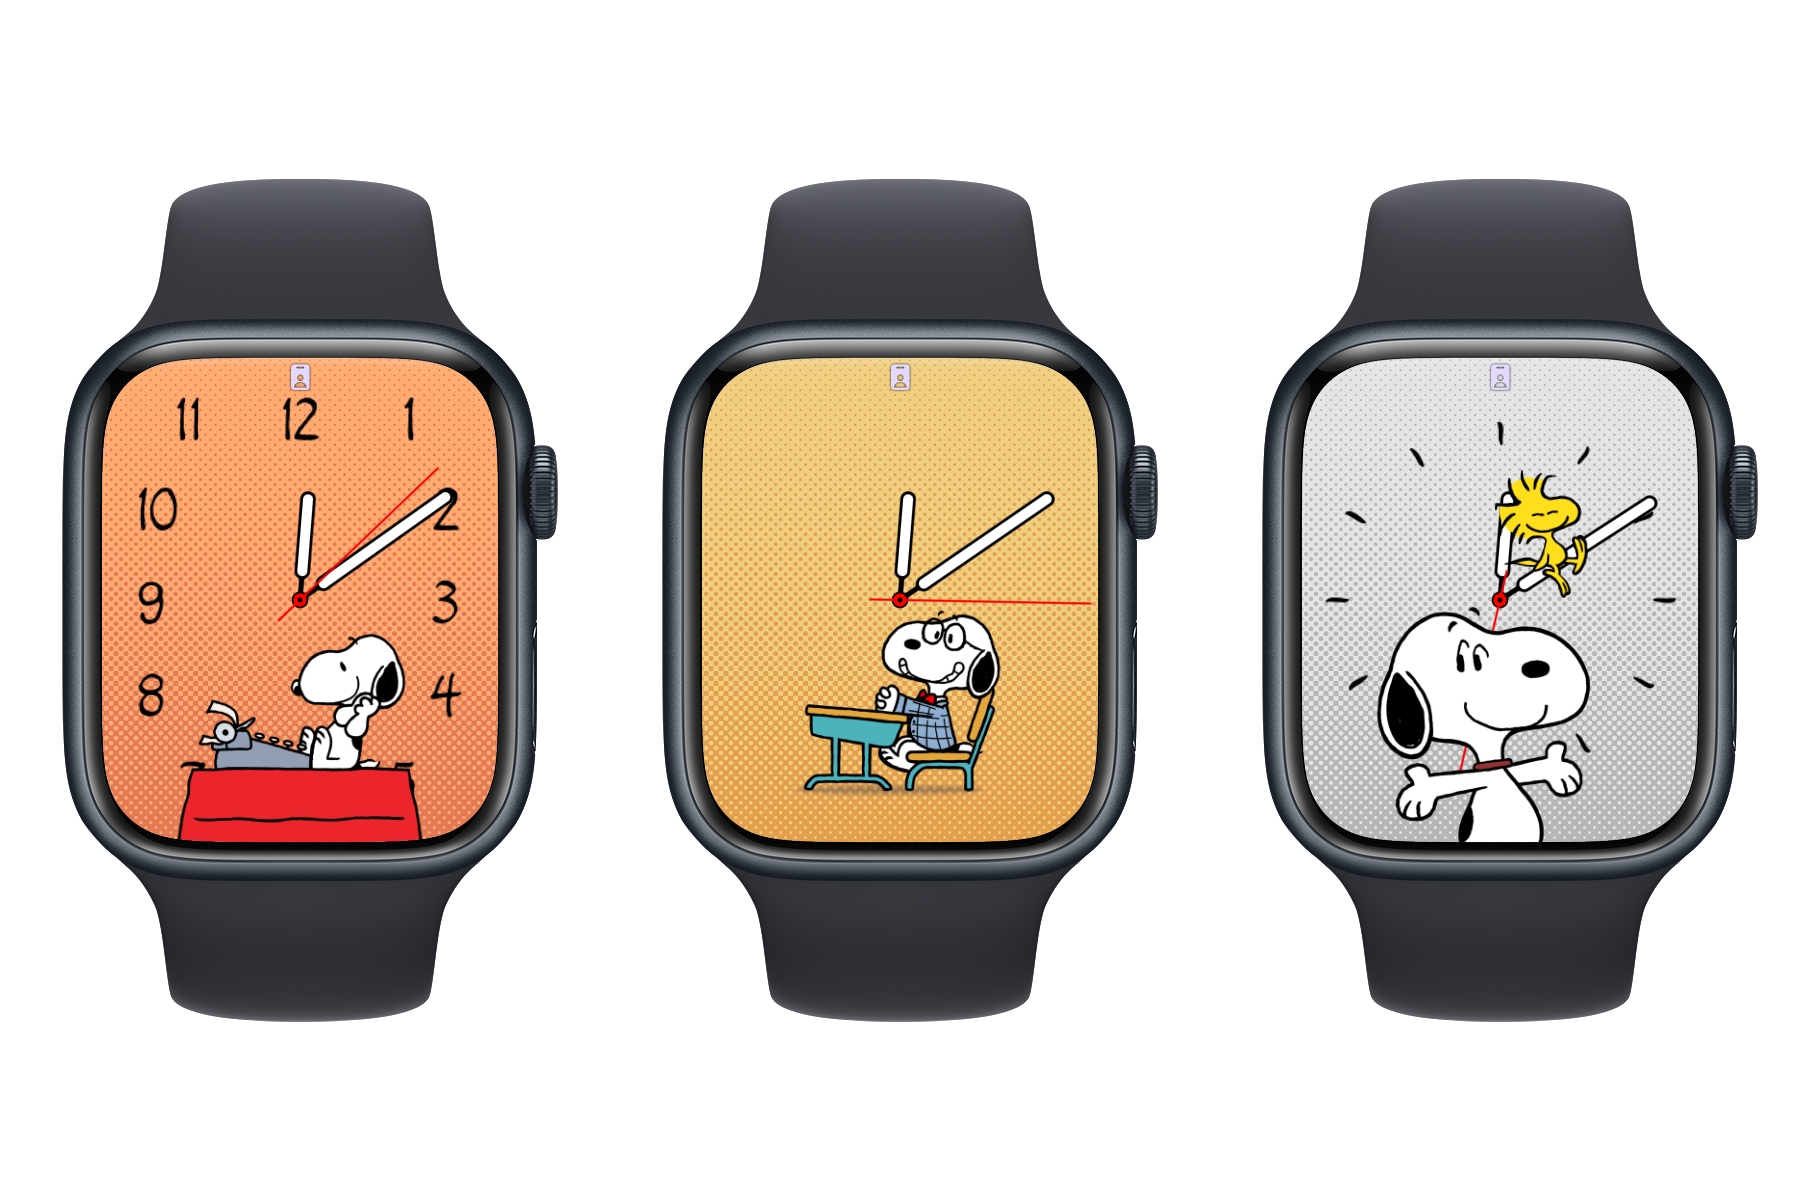 The best Apple Watch apps in 2023